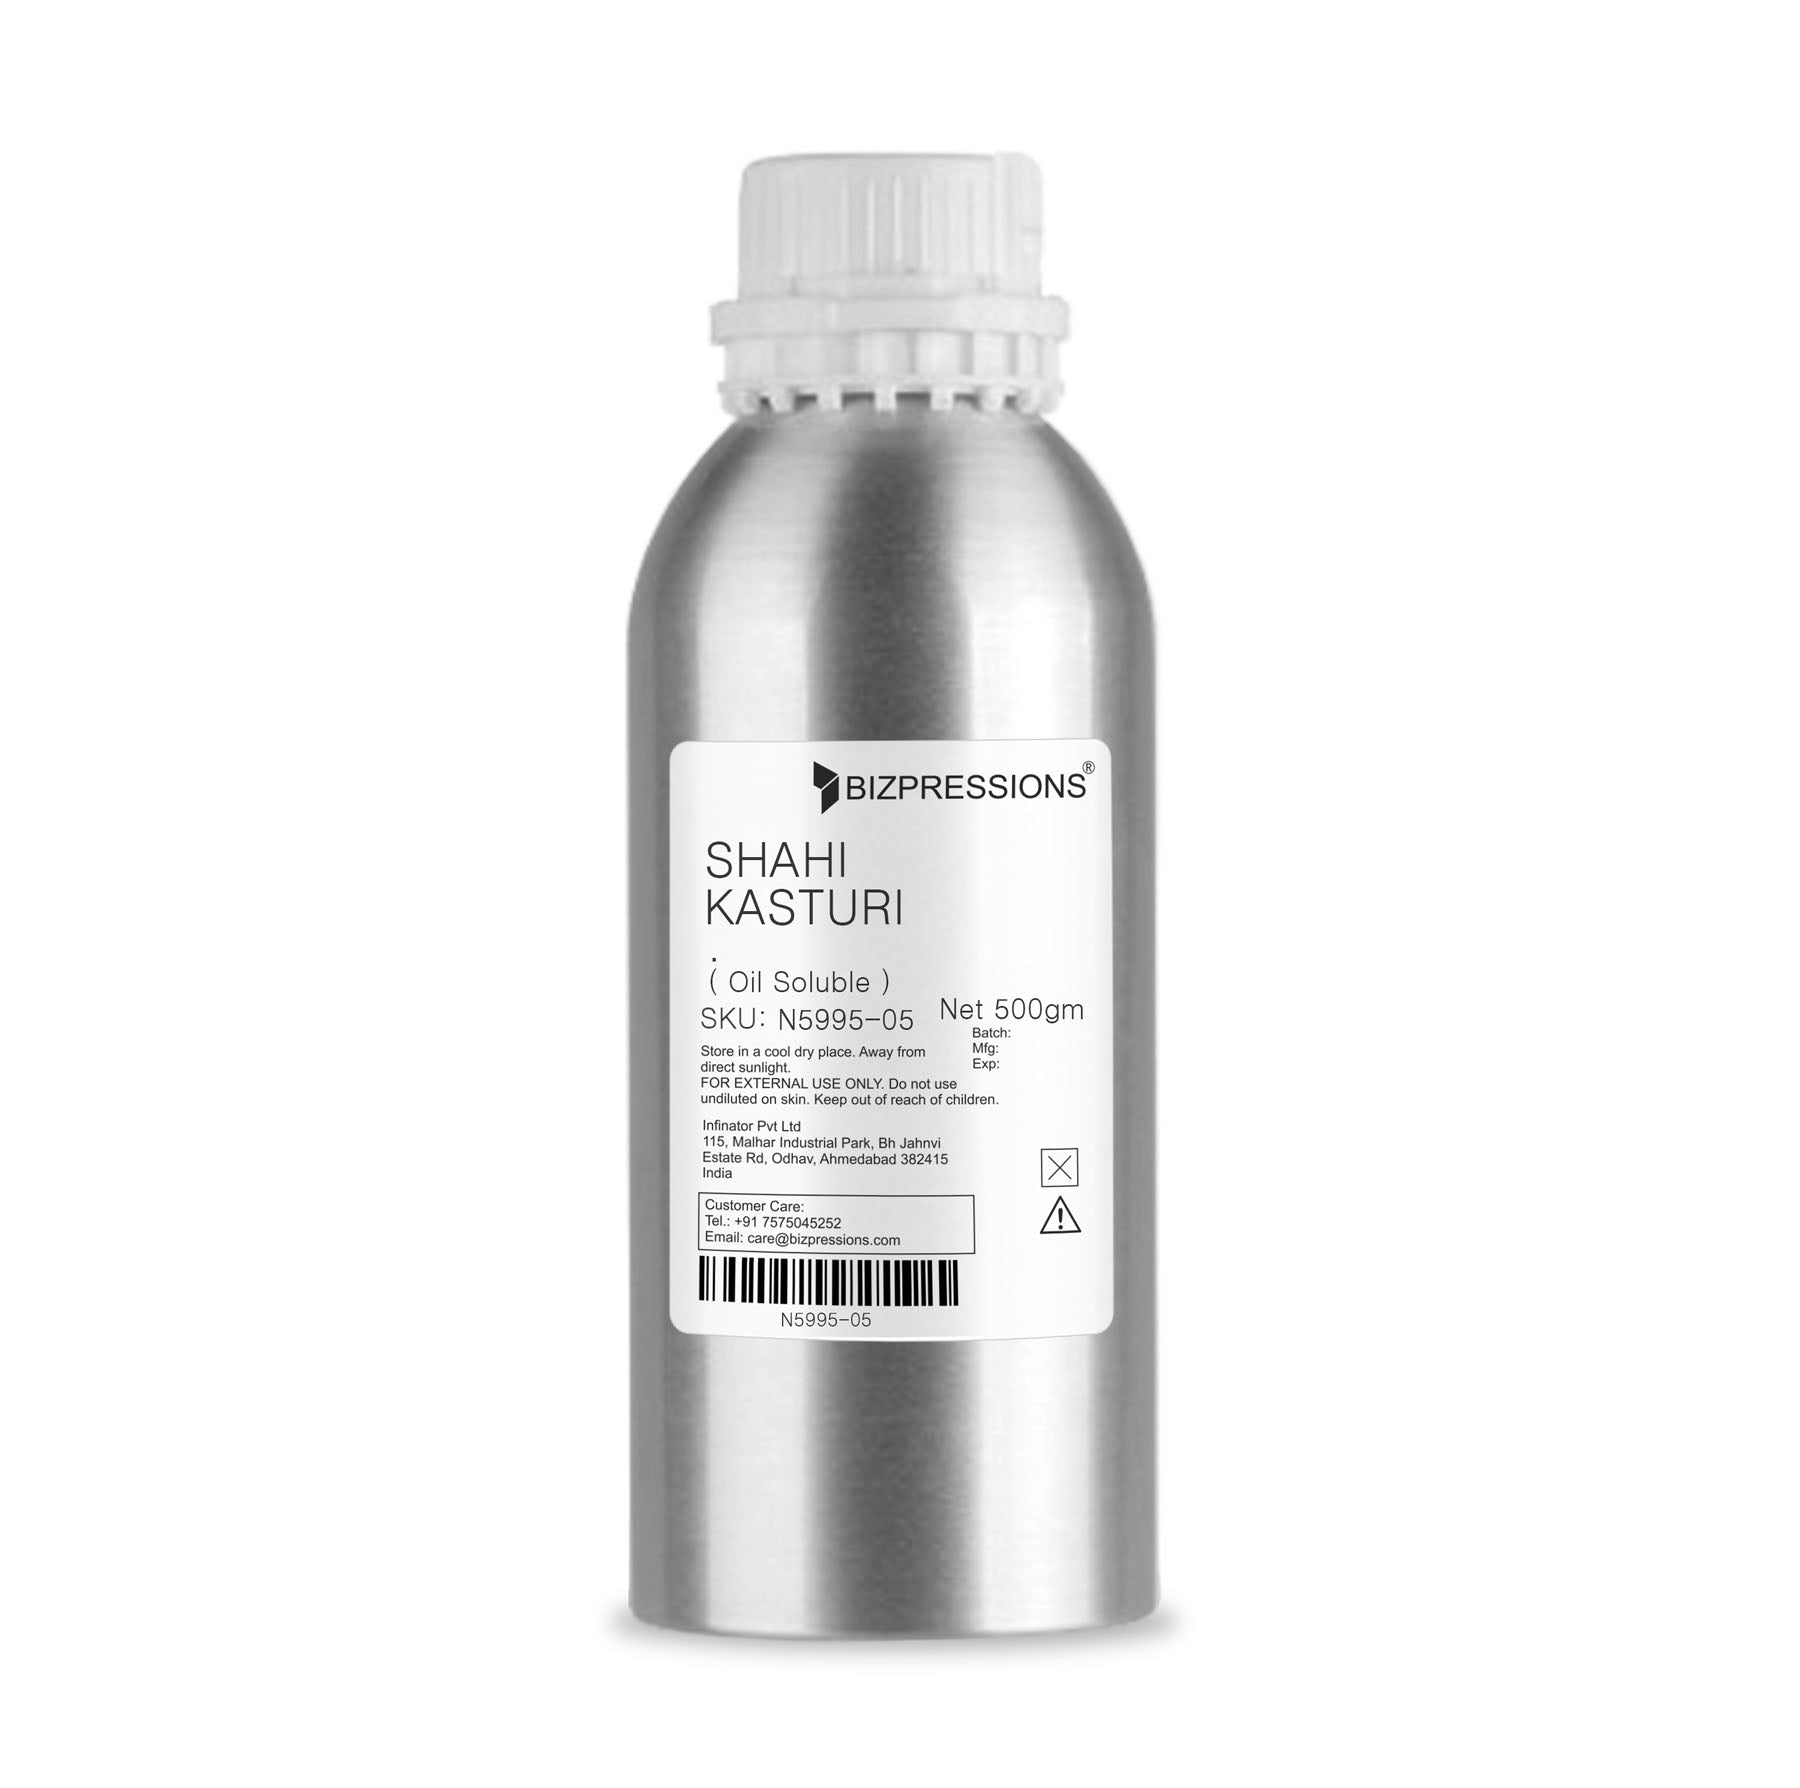 SHAHI KASTURI - Fragrance ( Oil Soluble ) - 500 gm